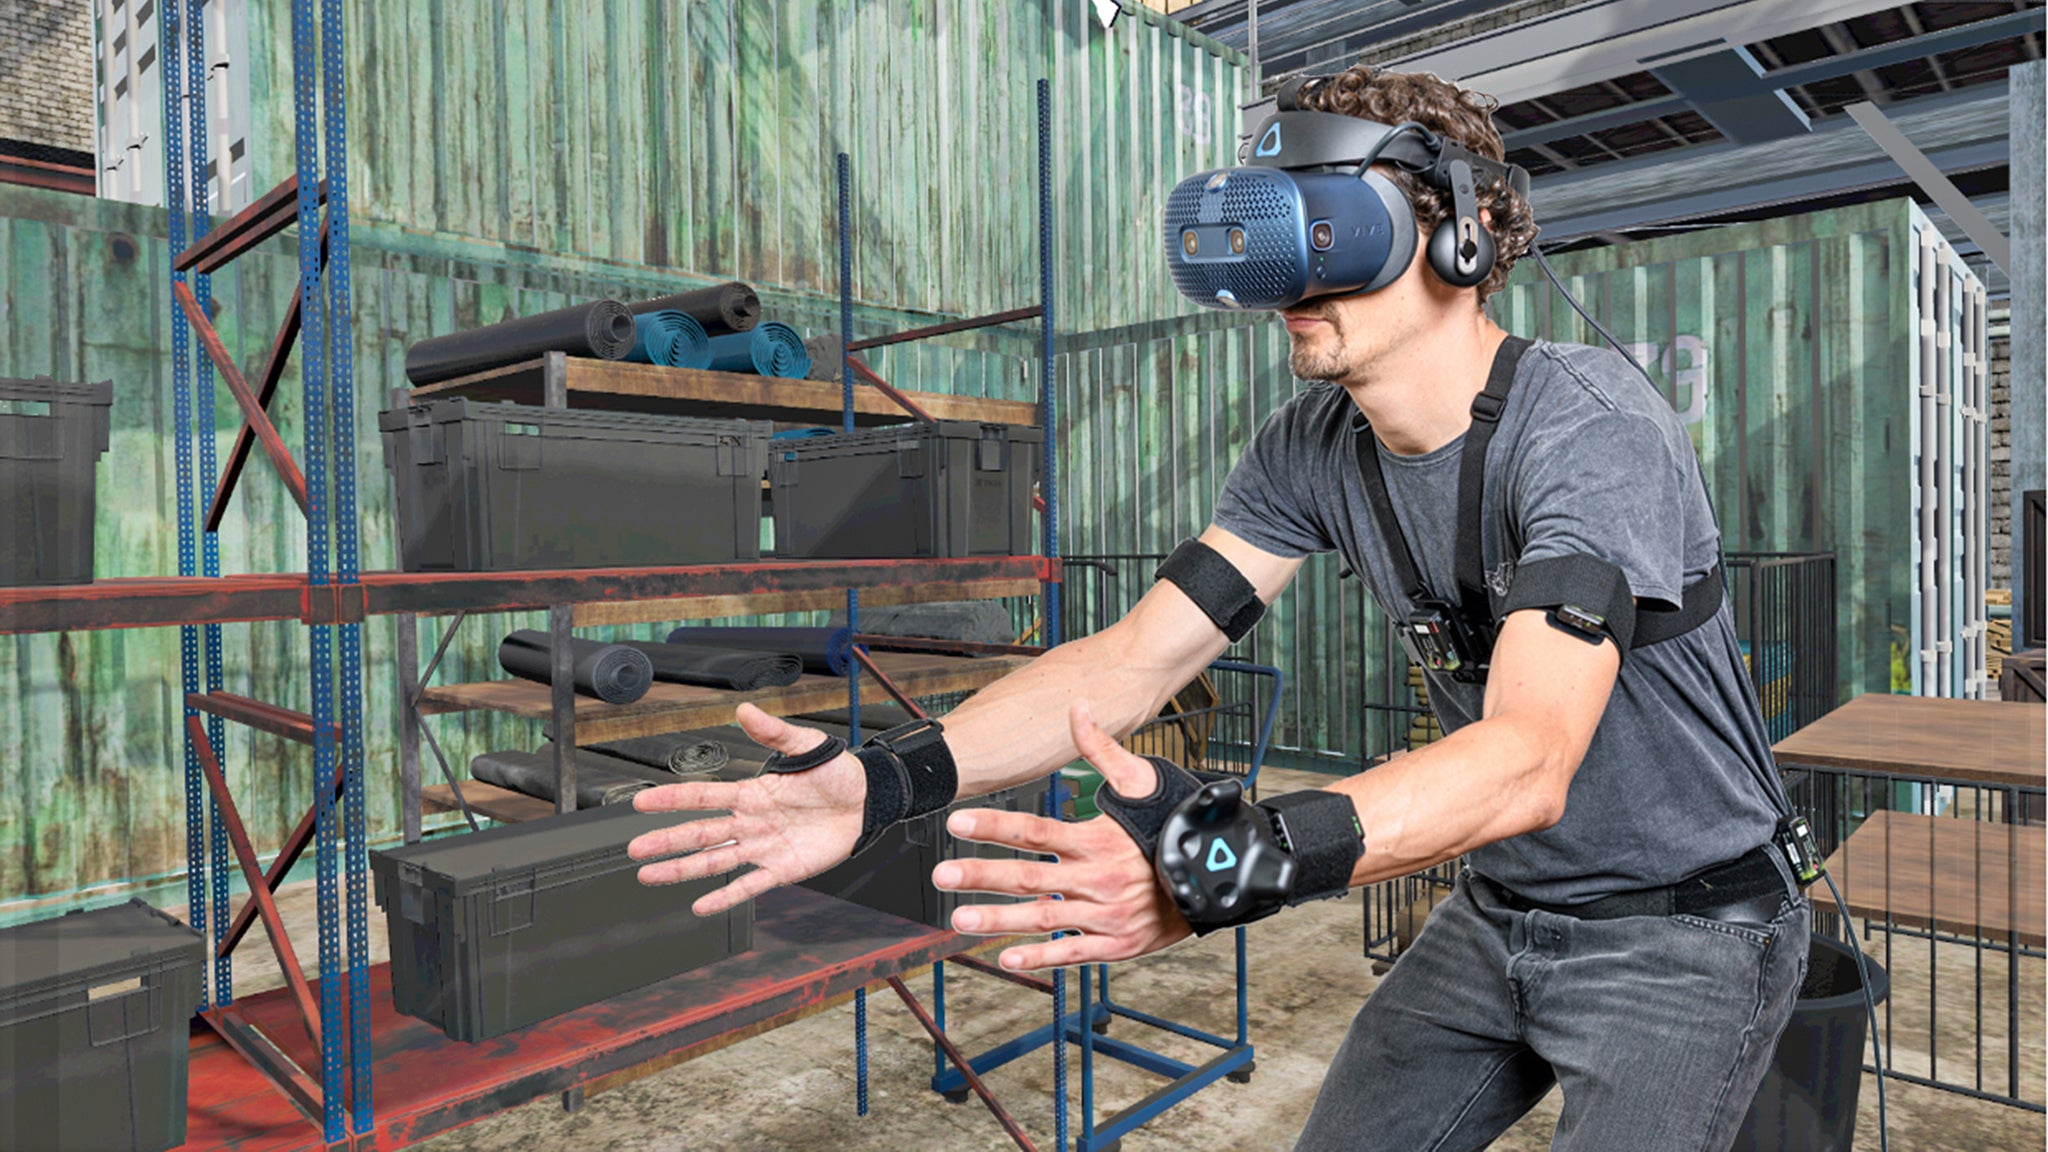 Fotomontage: Im Vordergrund sieht man einen Mann mit VR-Brille und zahlreichen Sensoren vor dem virtuellen Hintergrund eines Lagers